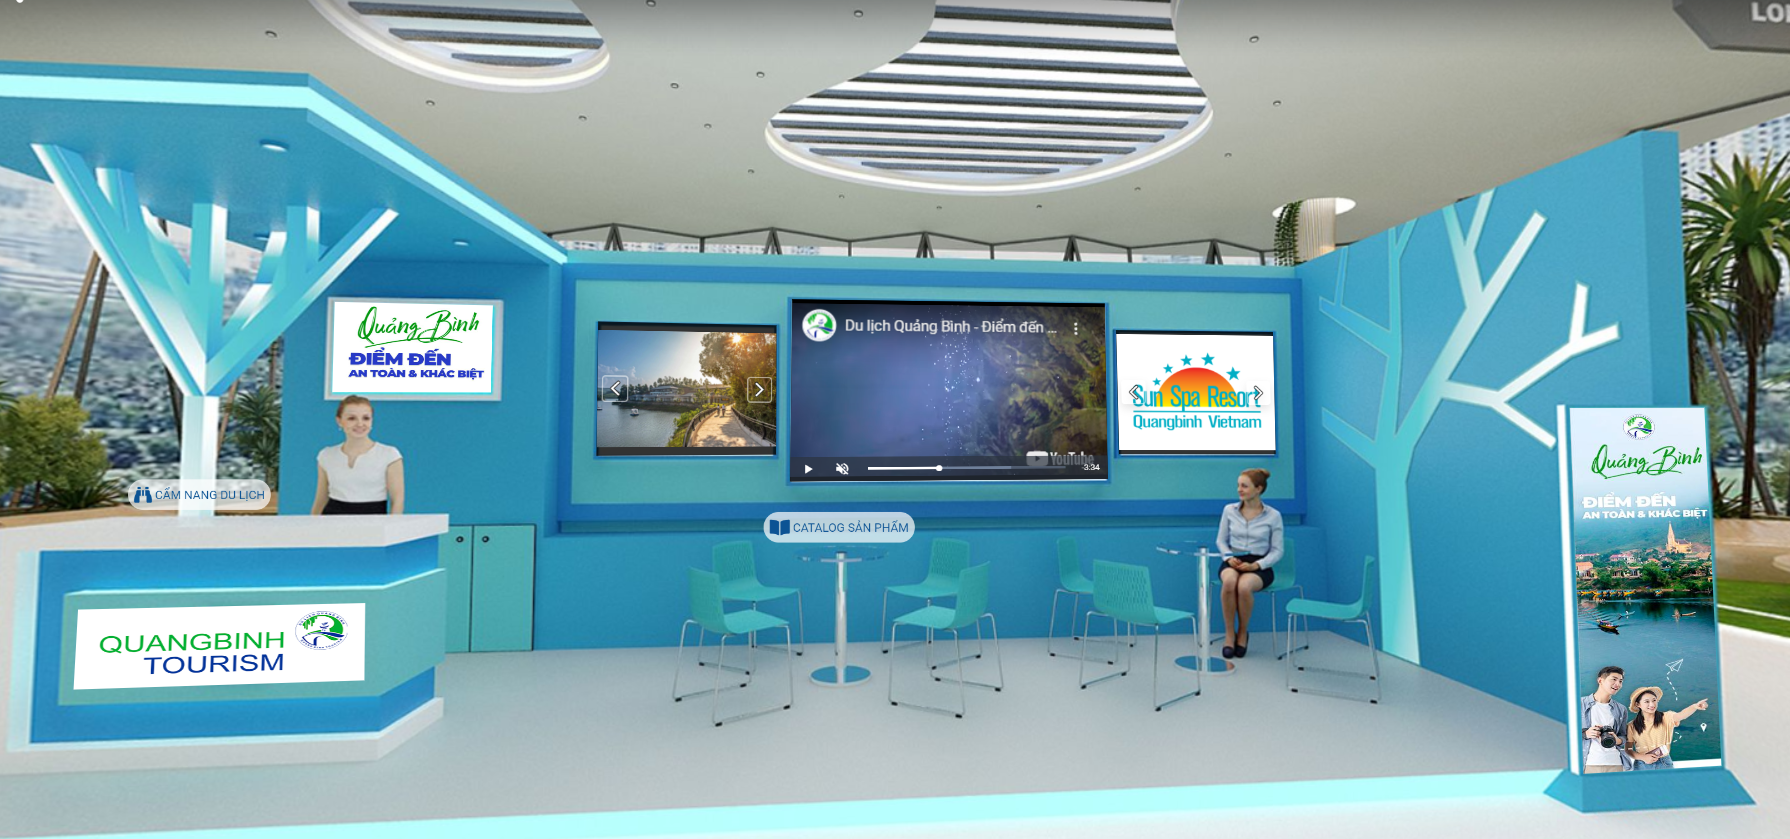 Ứng dụng công nghệ 3D dành cho khách tham quan trực tuyến tại gian hàng Du lịch Quảng Bình.